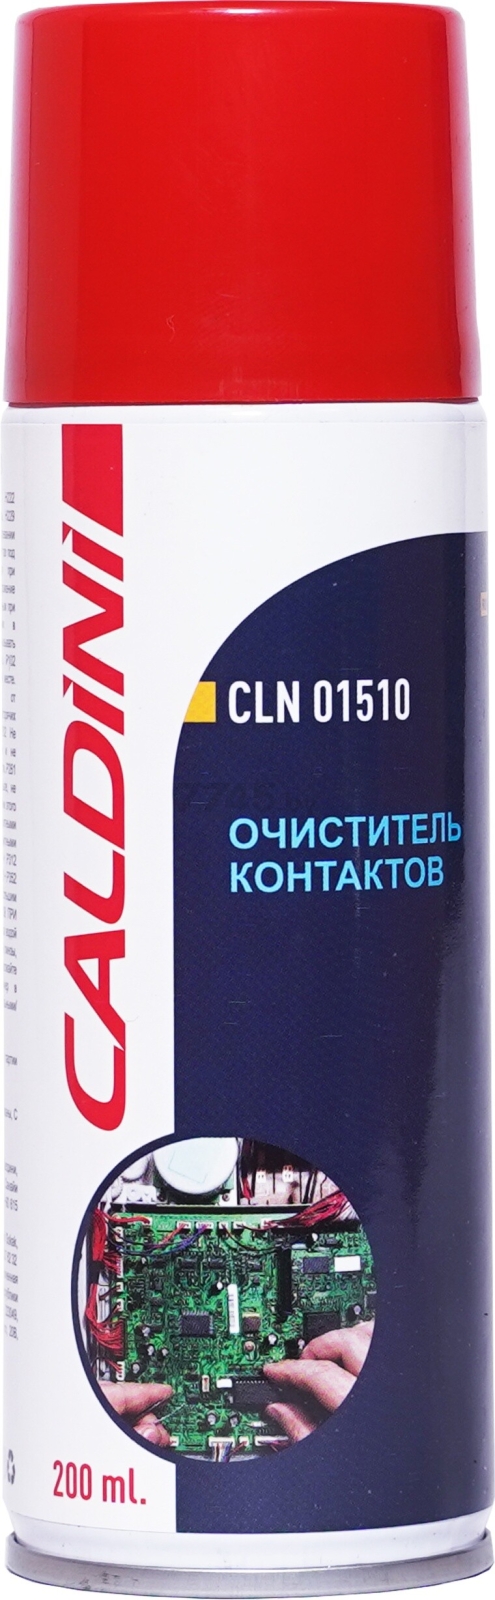 Очиститель контактов CALDINI 200 мл (CLN-01510)